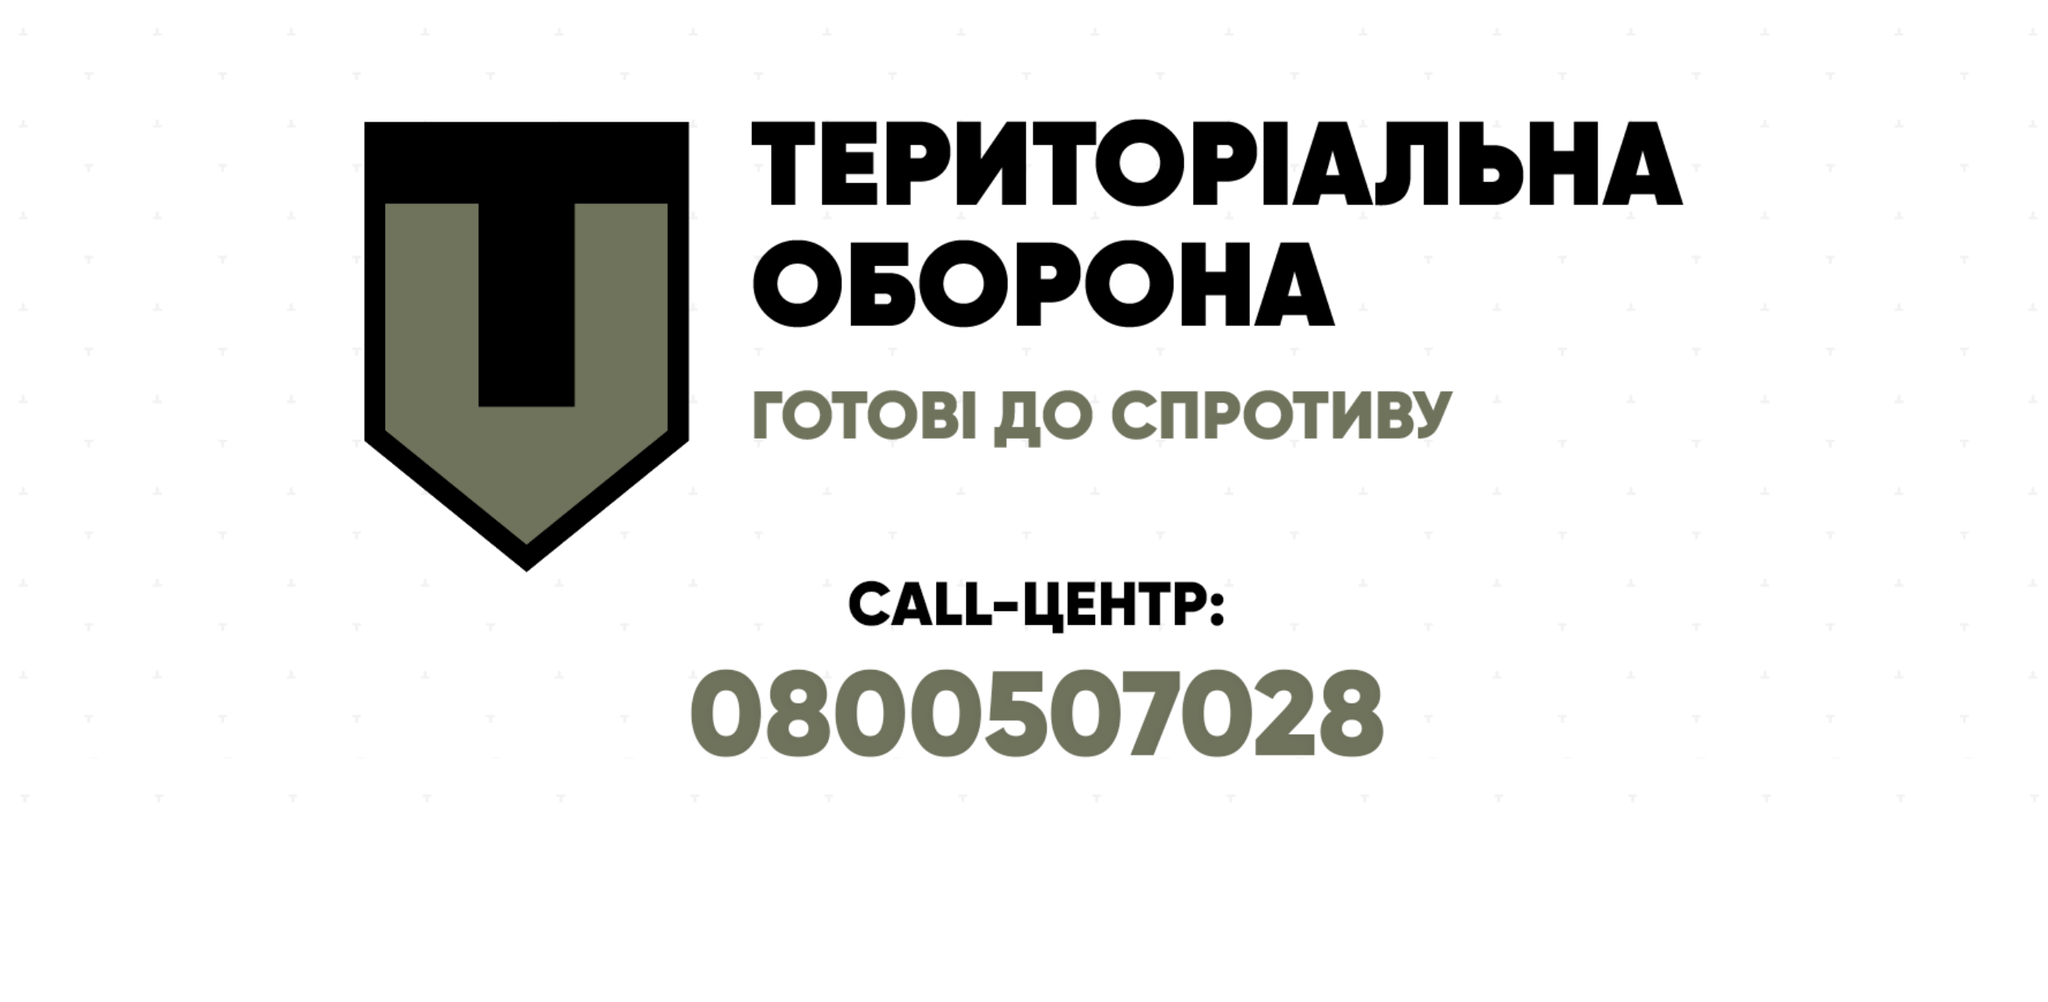 Киевляне могут сообщать конкретную информацию о передвижении вражеских войск и диверсантах в Терроборону (контакты)